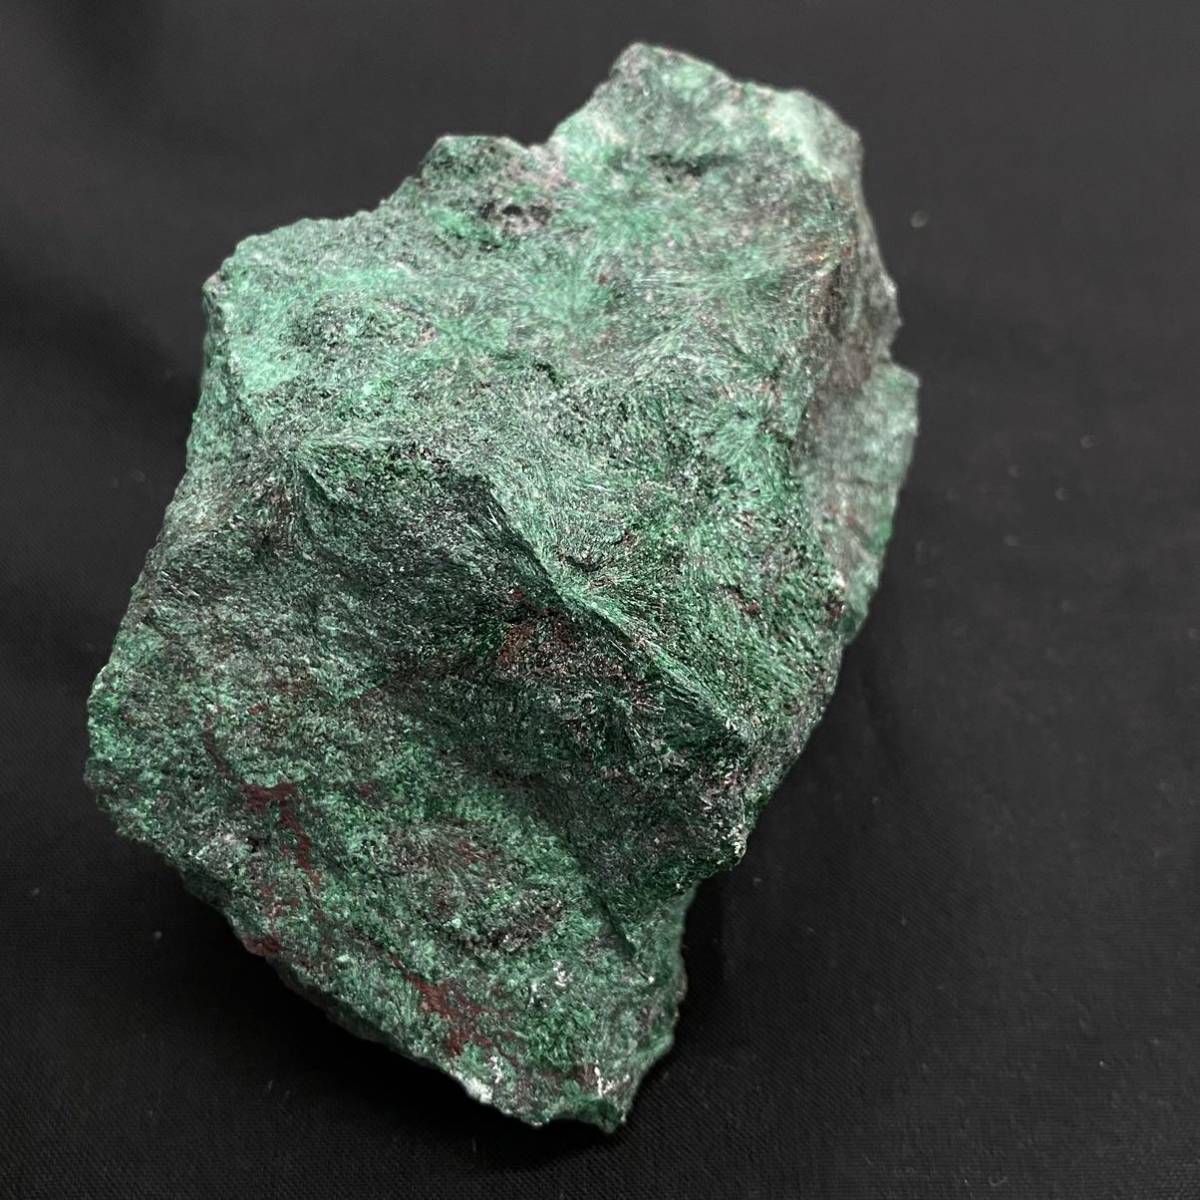 858 鉱石 原石 天然石 MALACHITE 孔雀石 マラカイト 253g CuCO3・Cu(OH)2 アリゾナ州 U.S.A. 鉱物_画像3